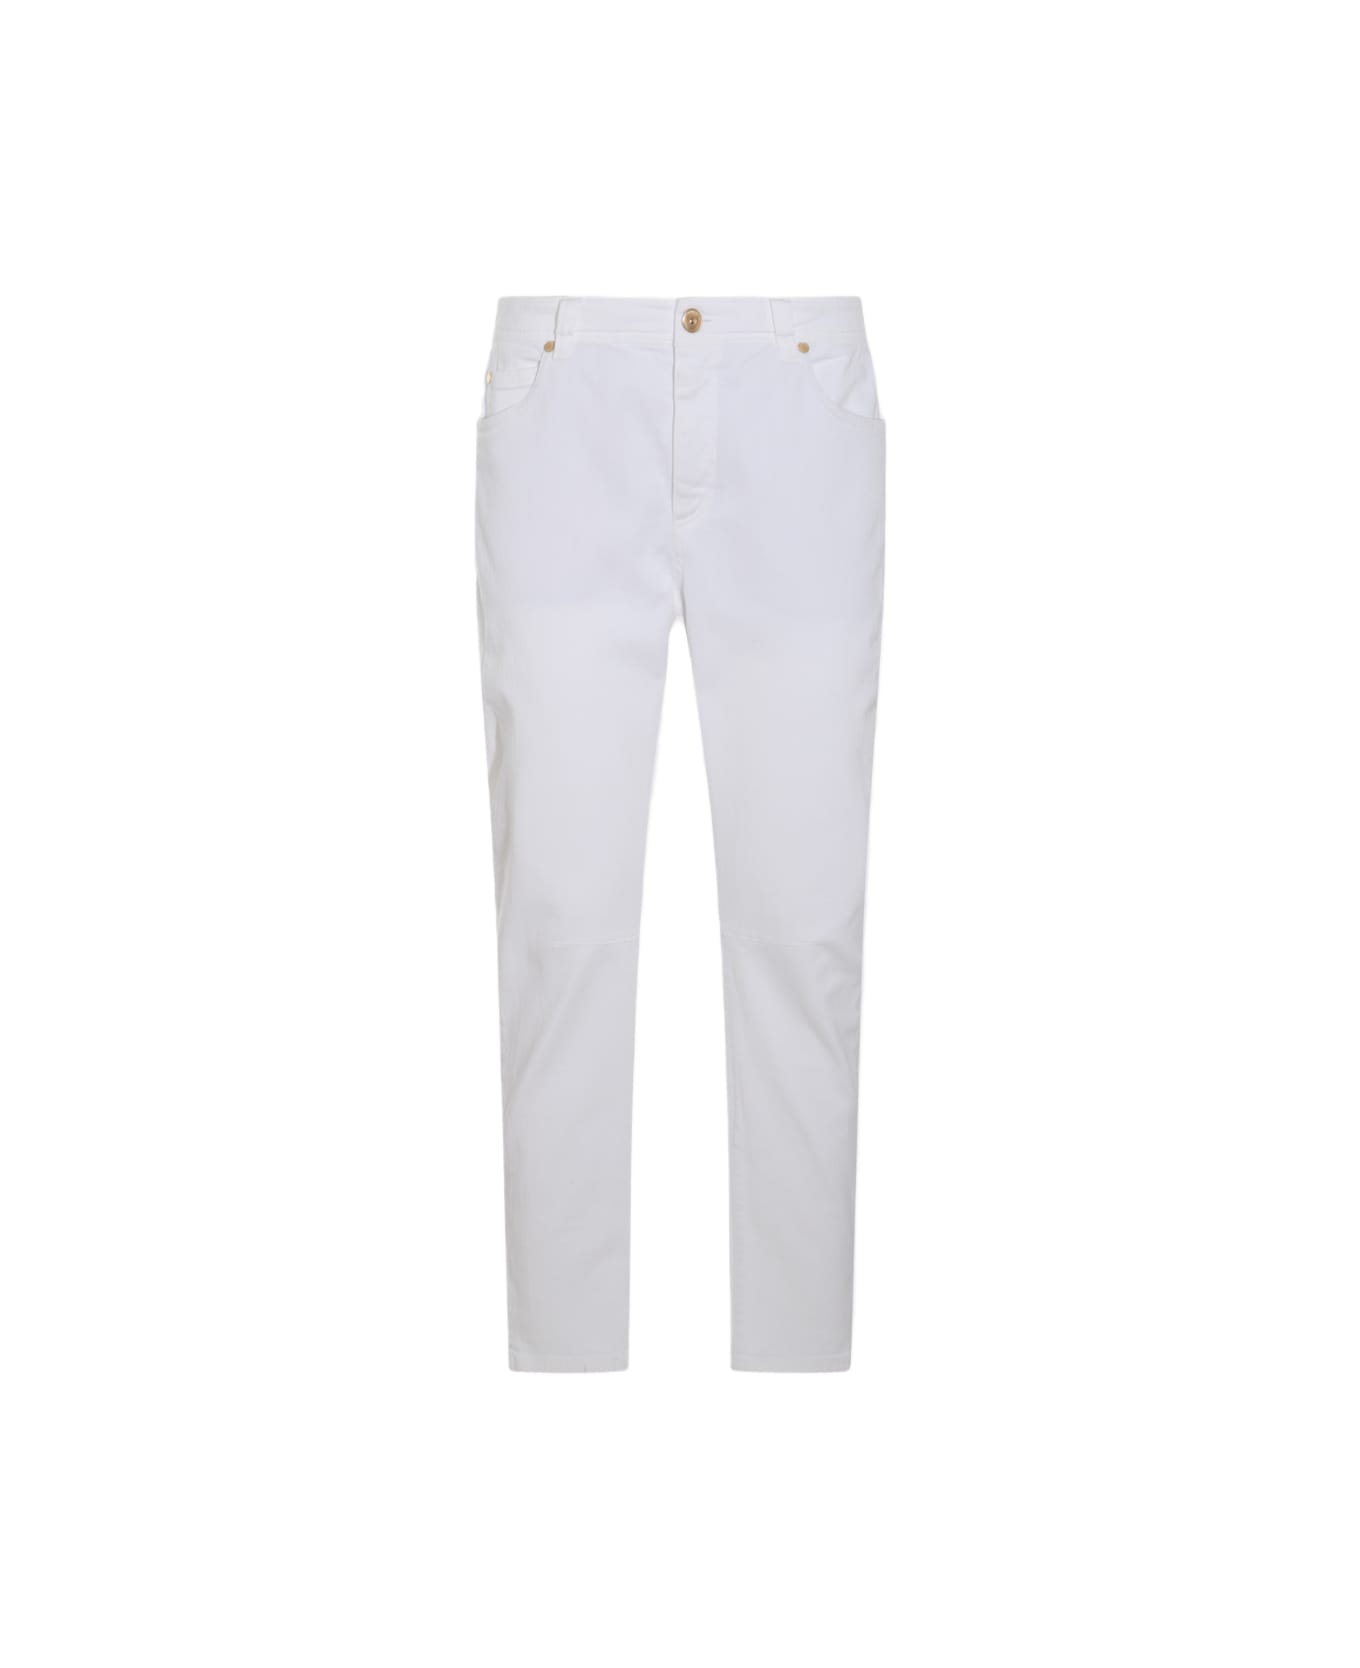 Brunello Cucinelli White Cotton Blend Jeans - White ボトムス